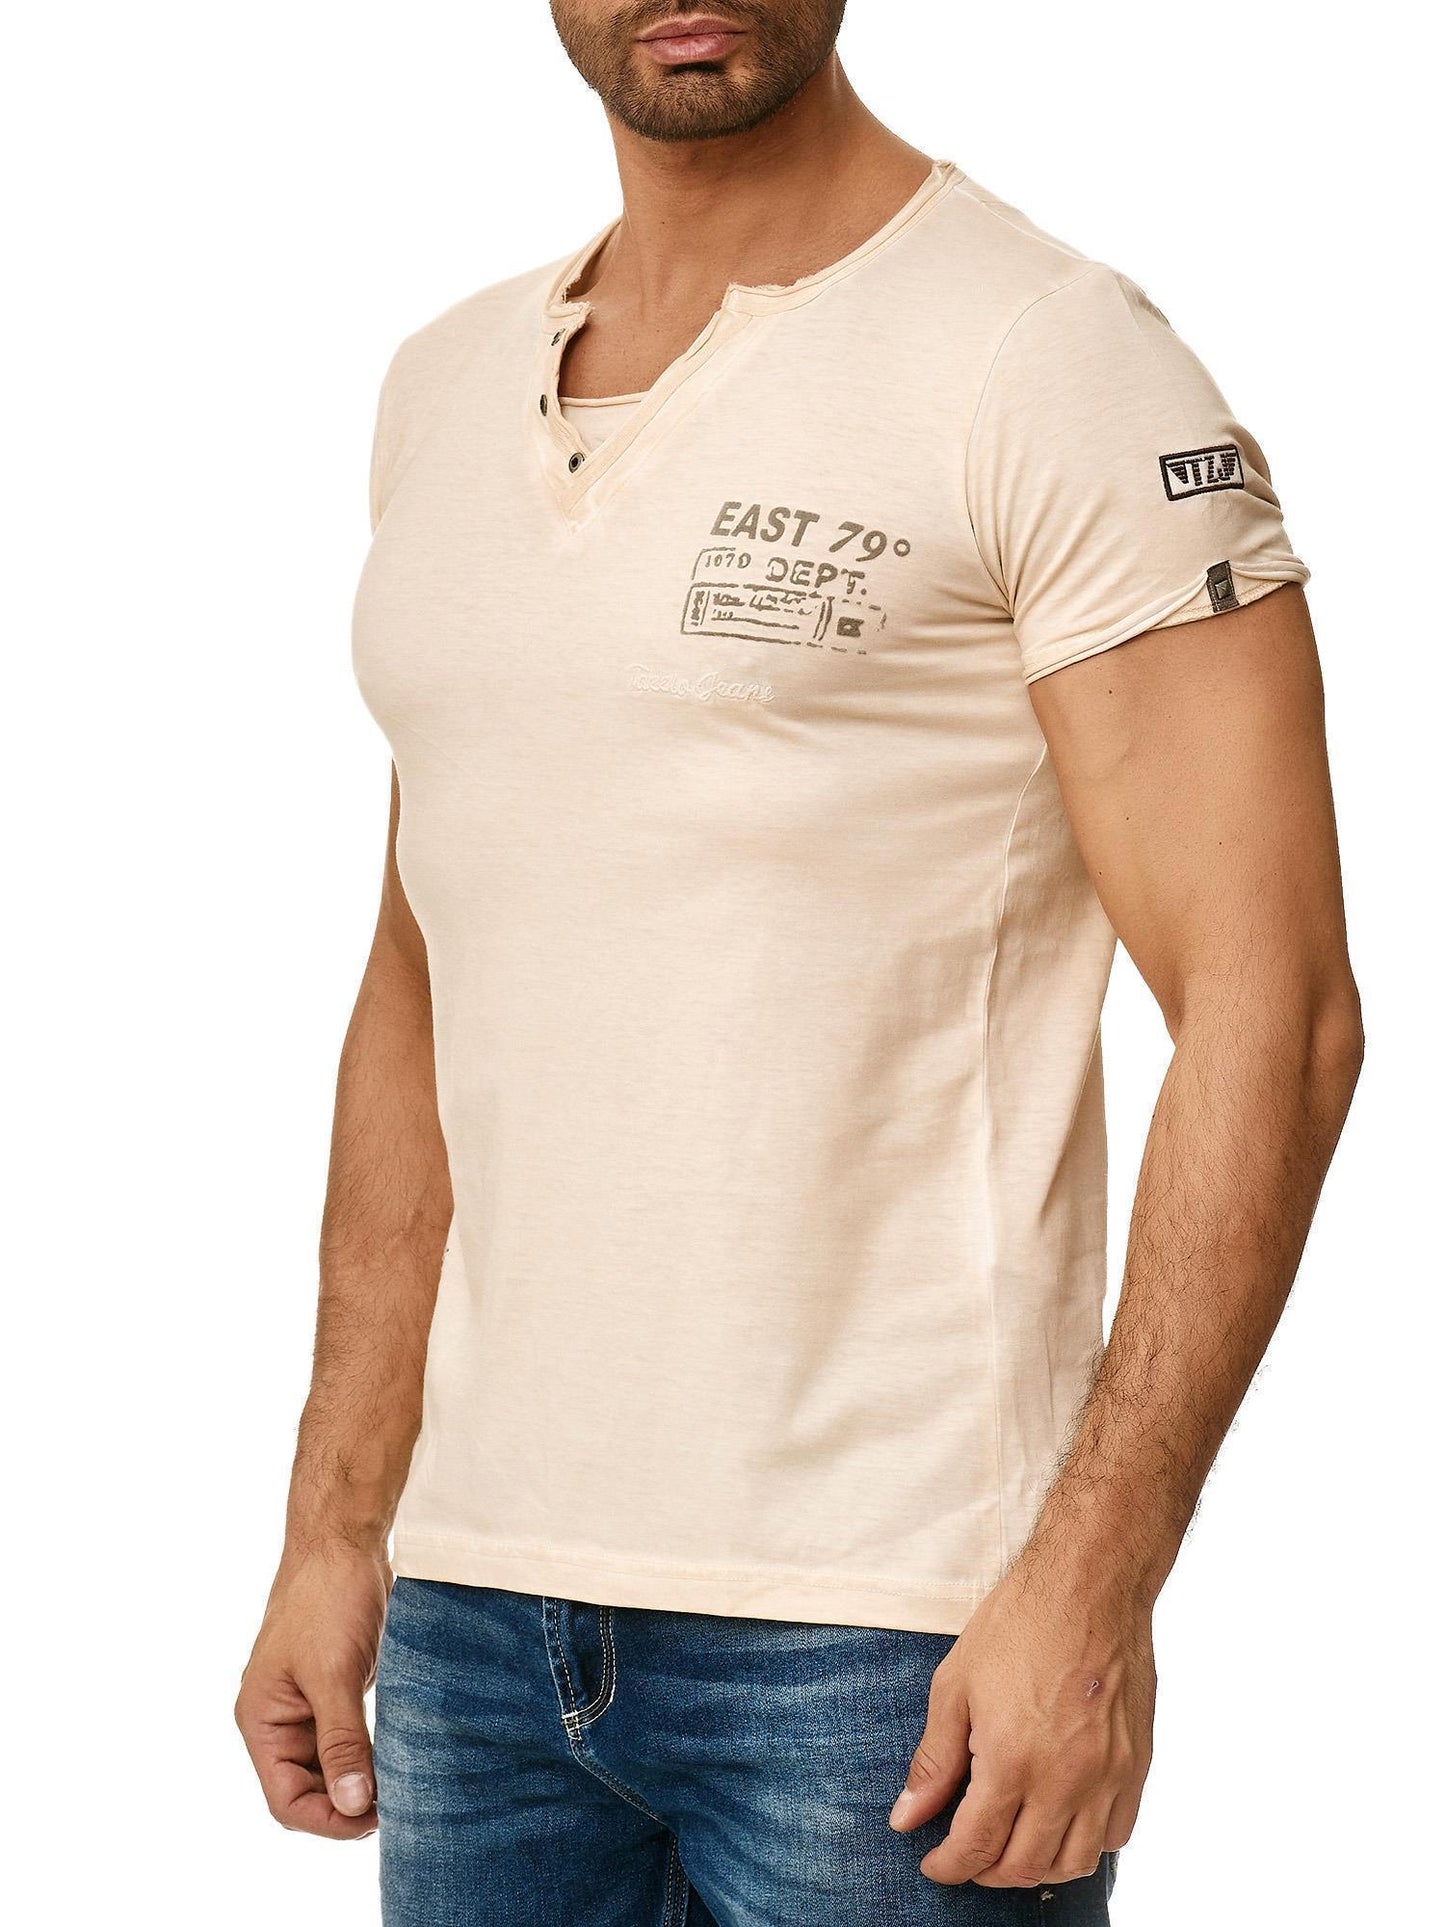 Tazzio Herren T-Shirt mit V-Ausschnitt 4060